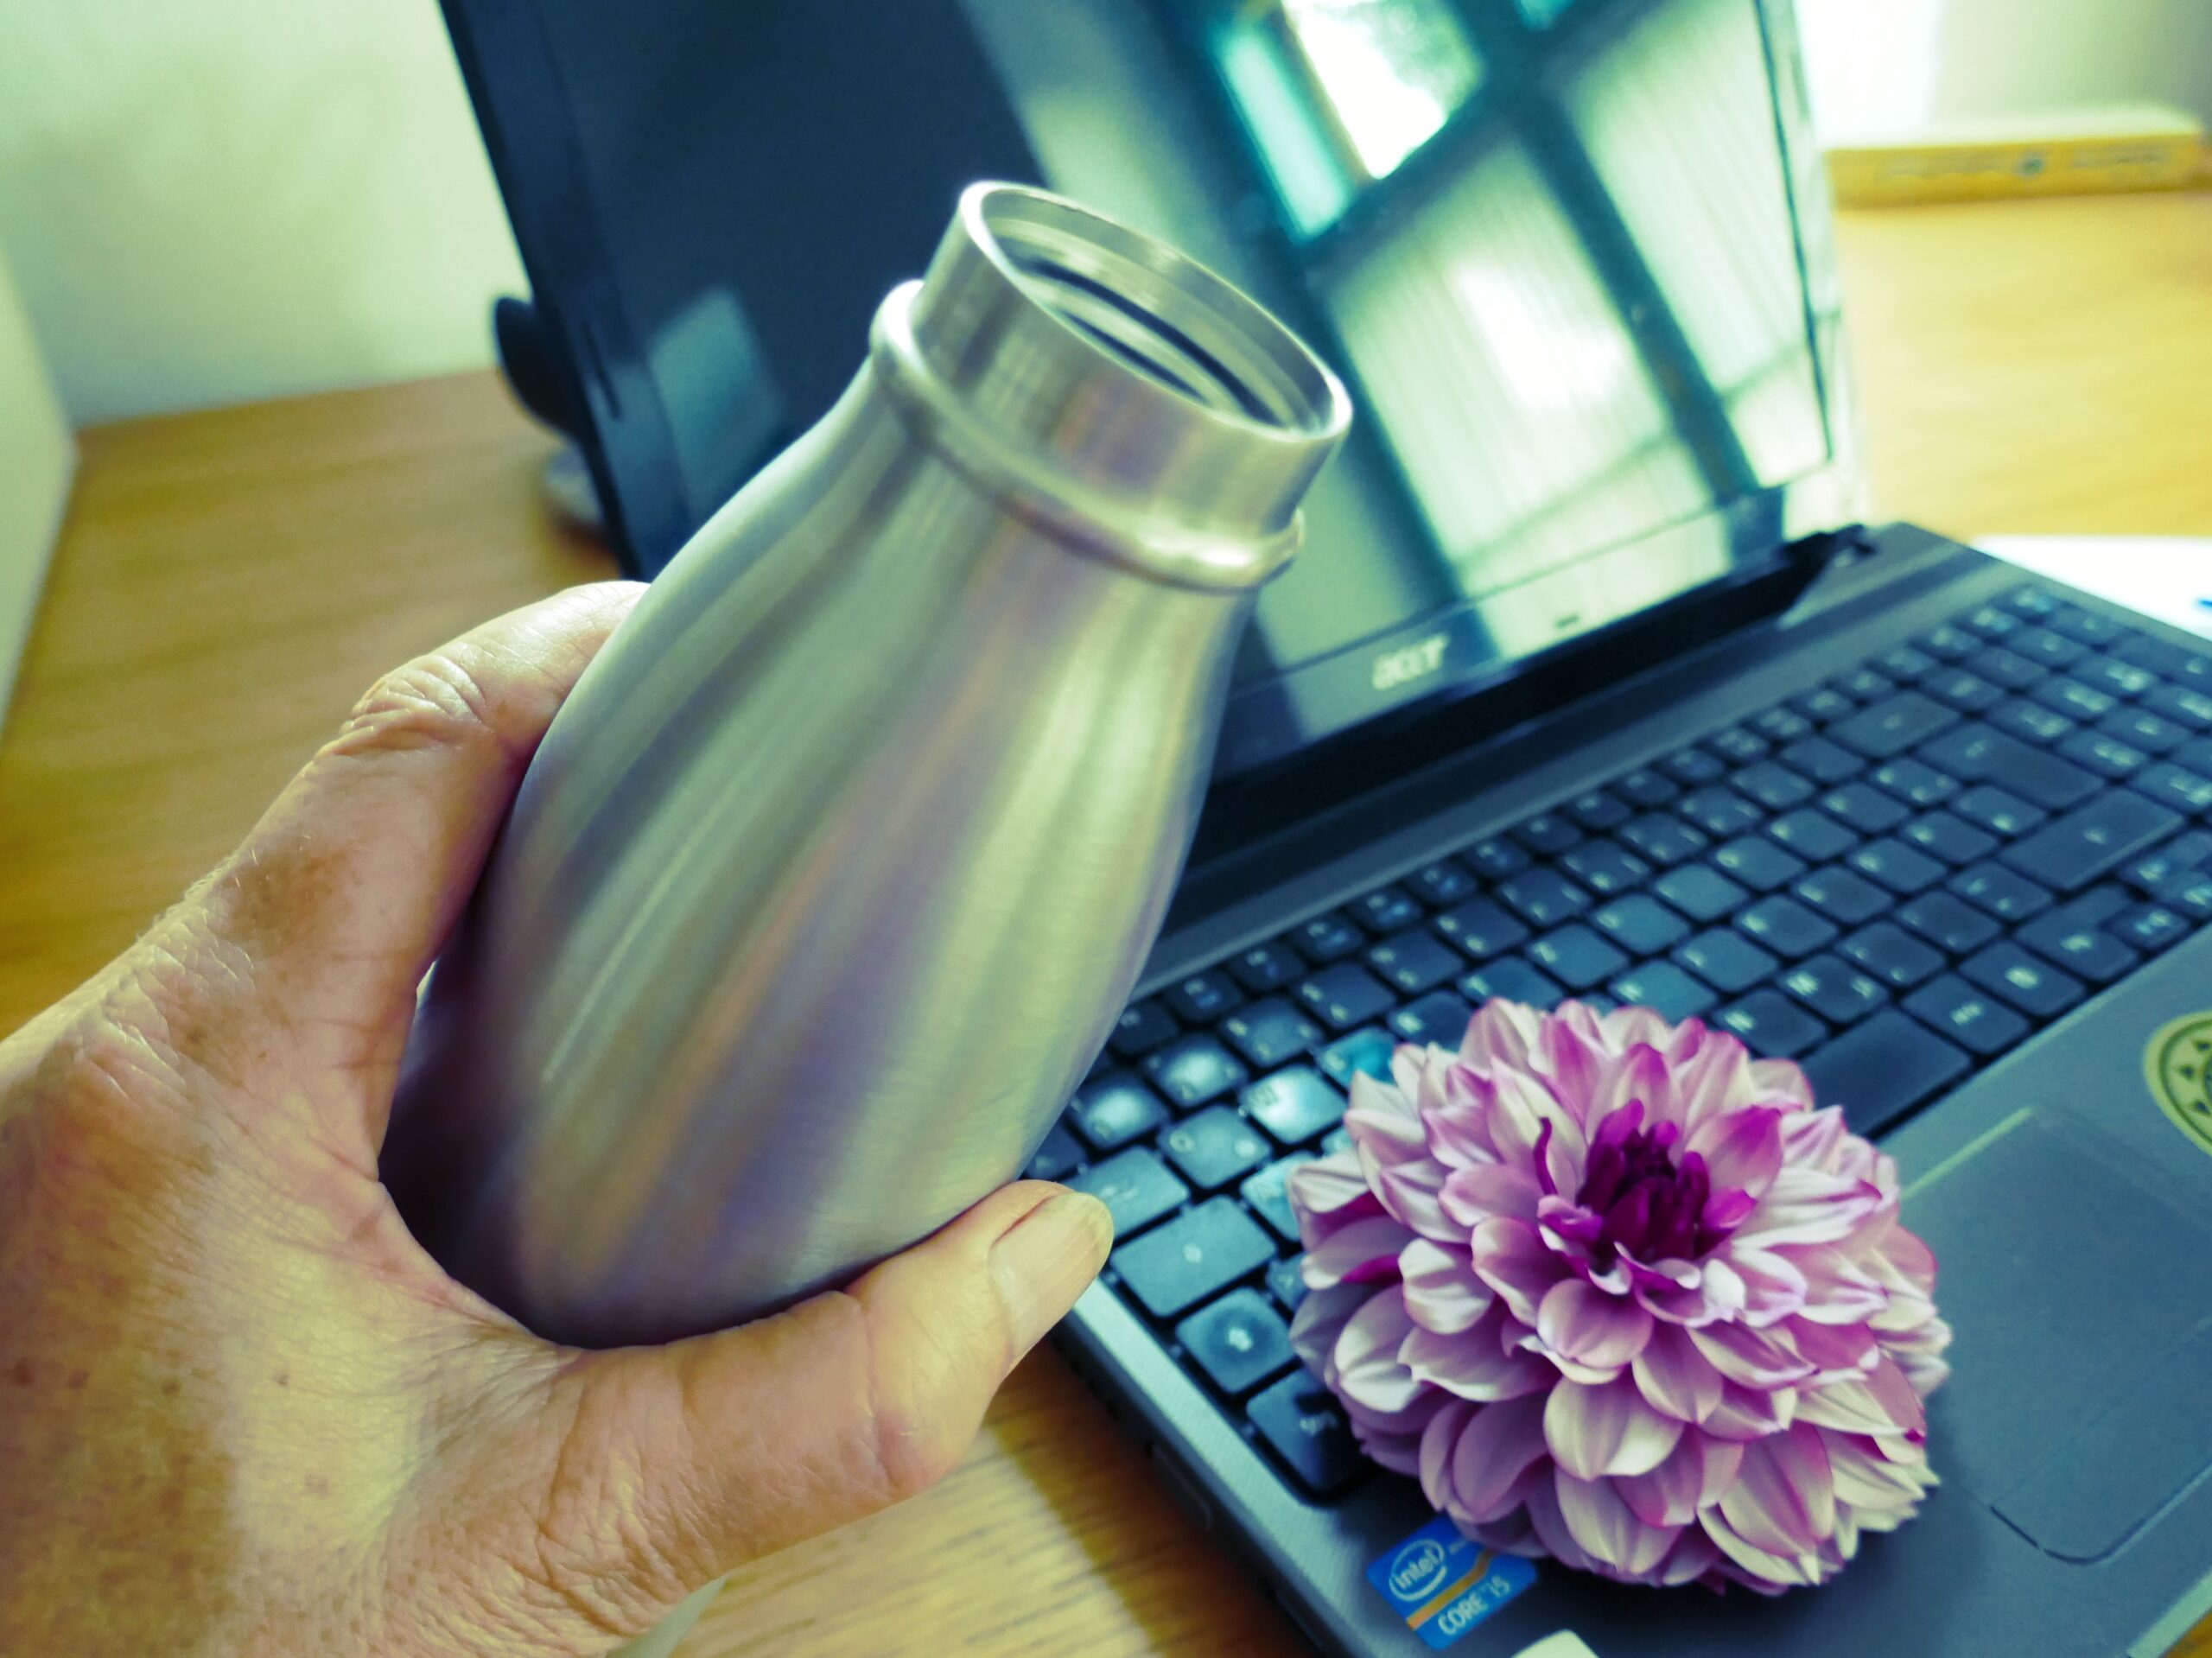 eine Hand hält eine Trinkflasche, dahinter sieht man ein Notebook mit einer Lotusblüte darauf